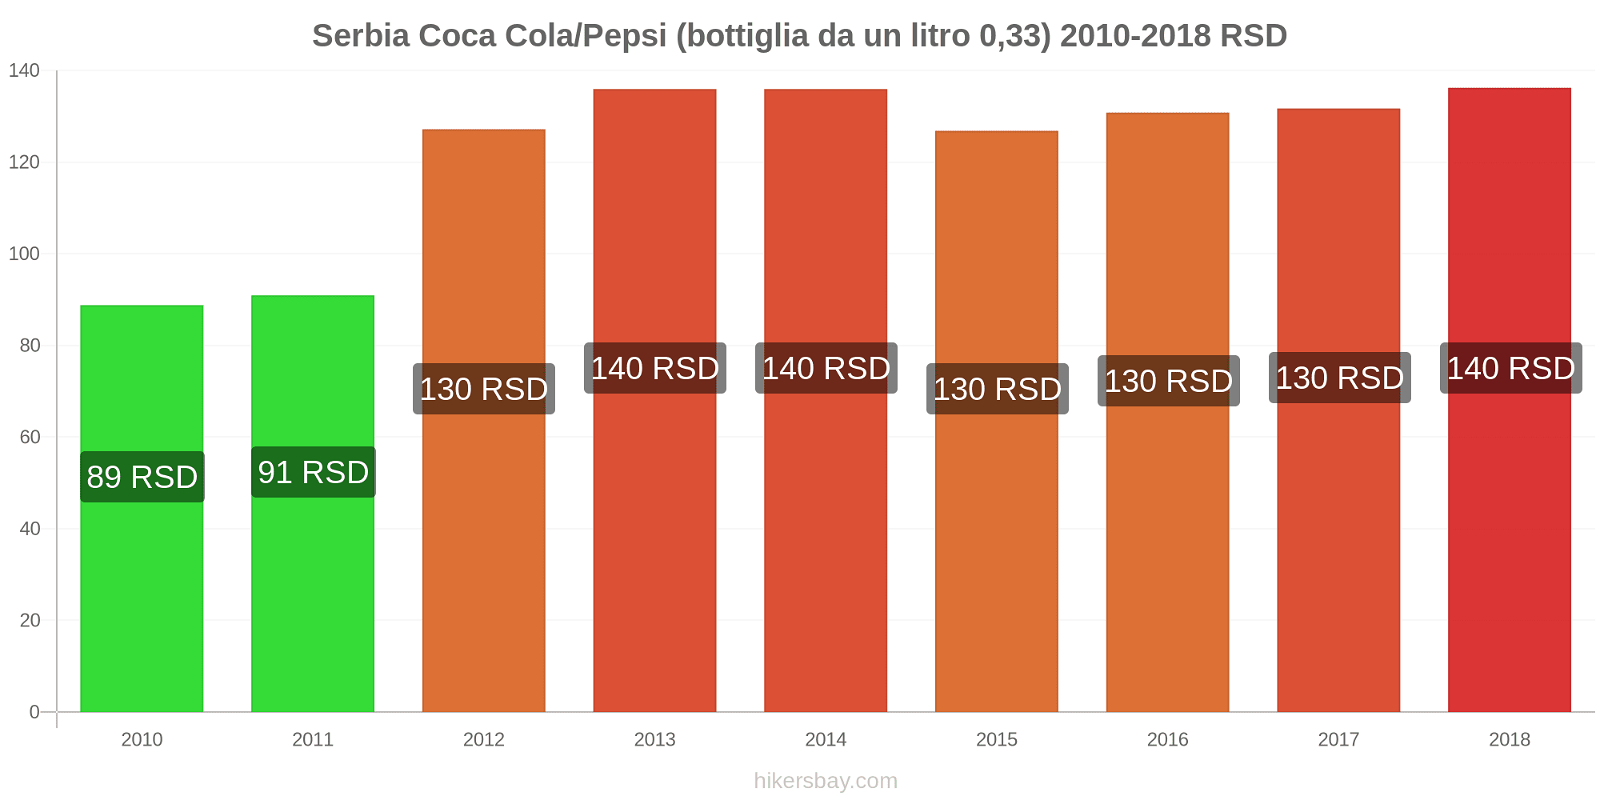 Serbia cambi di prezzo Coca-Cola/Pepsi (bottiglia da 0.33 litri) hikersbay.com